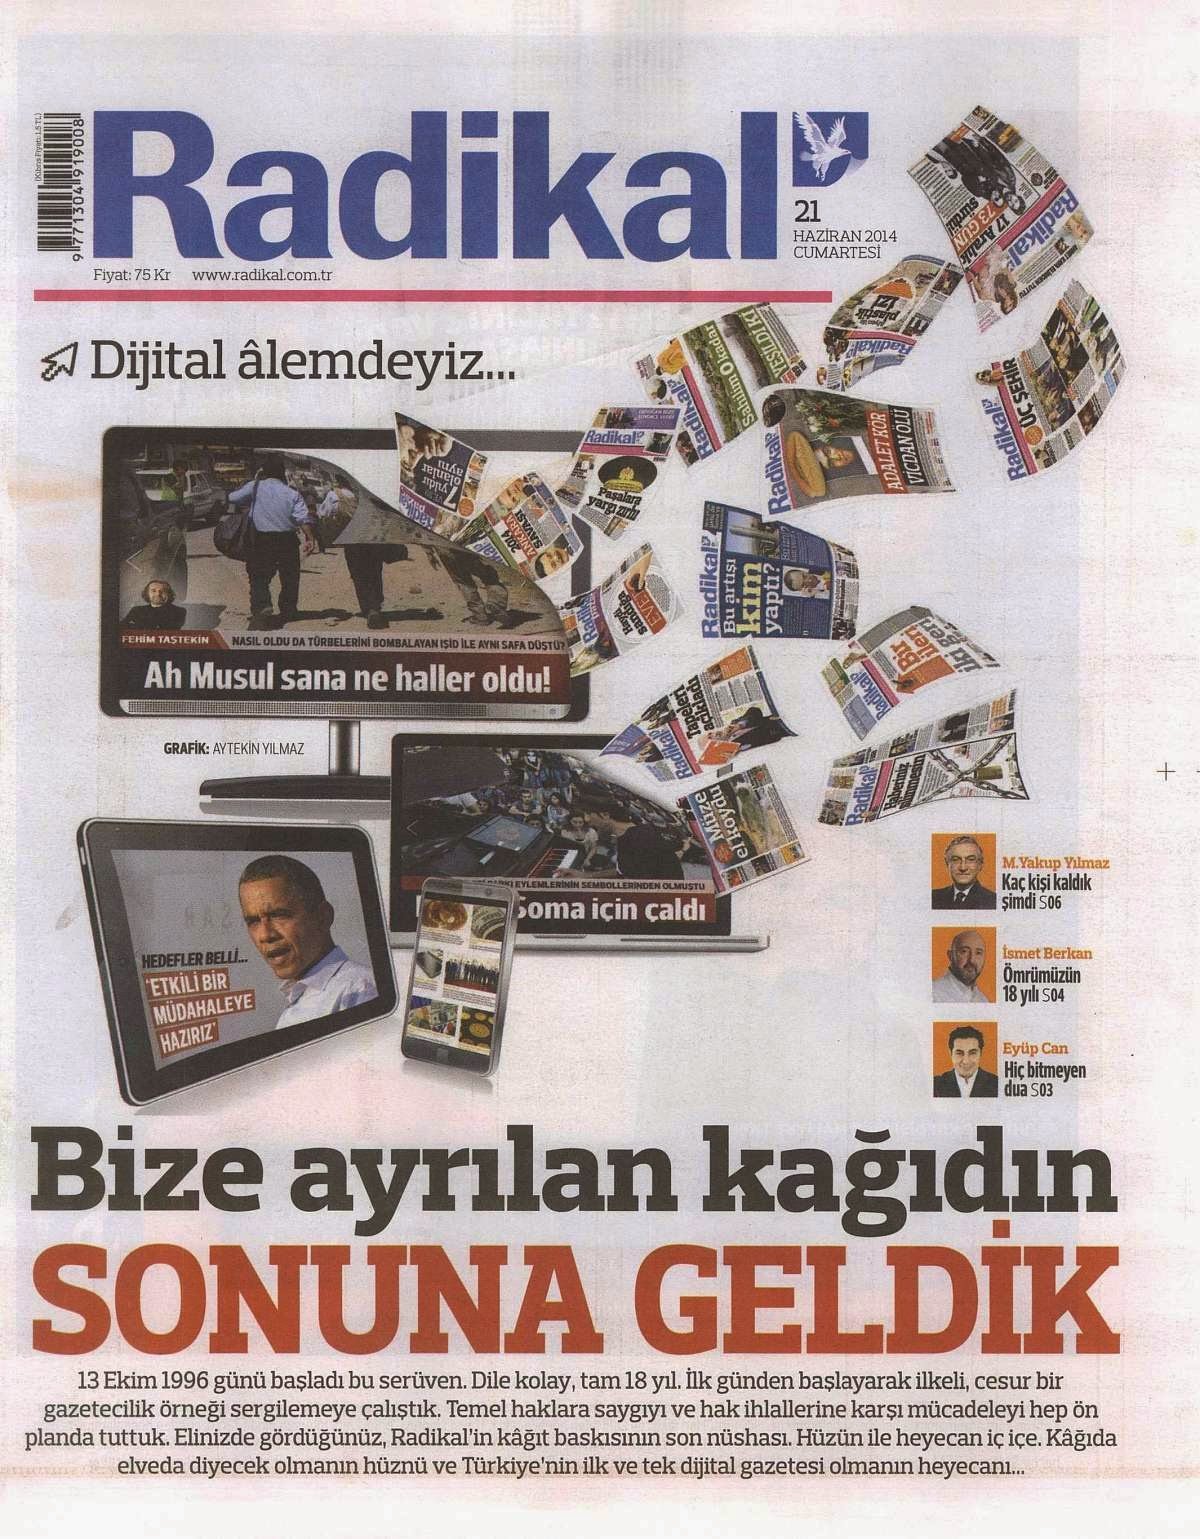 21 Haziran 2014'te yayın hayatına veda eden Radikal'in son sayısı.